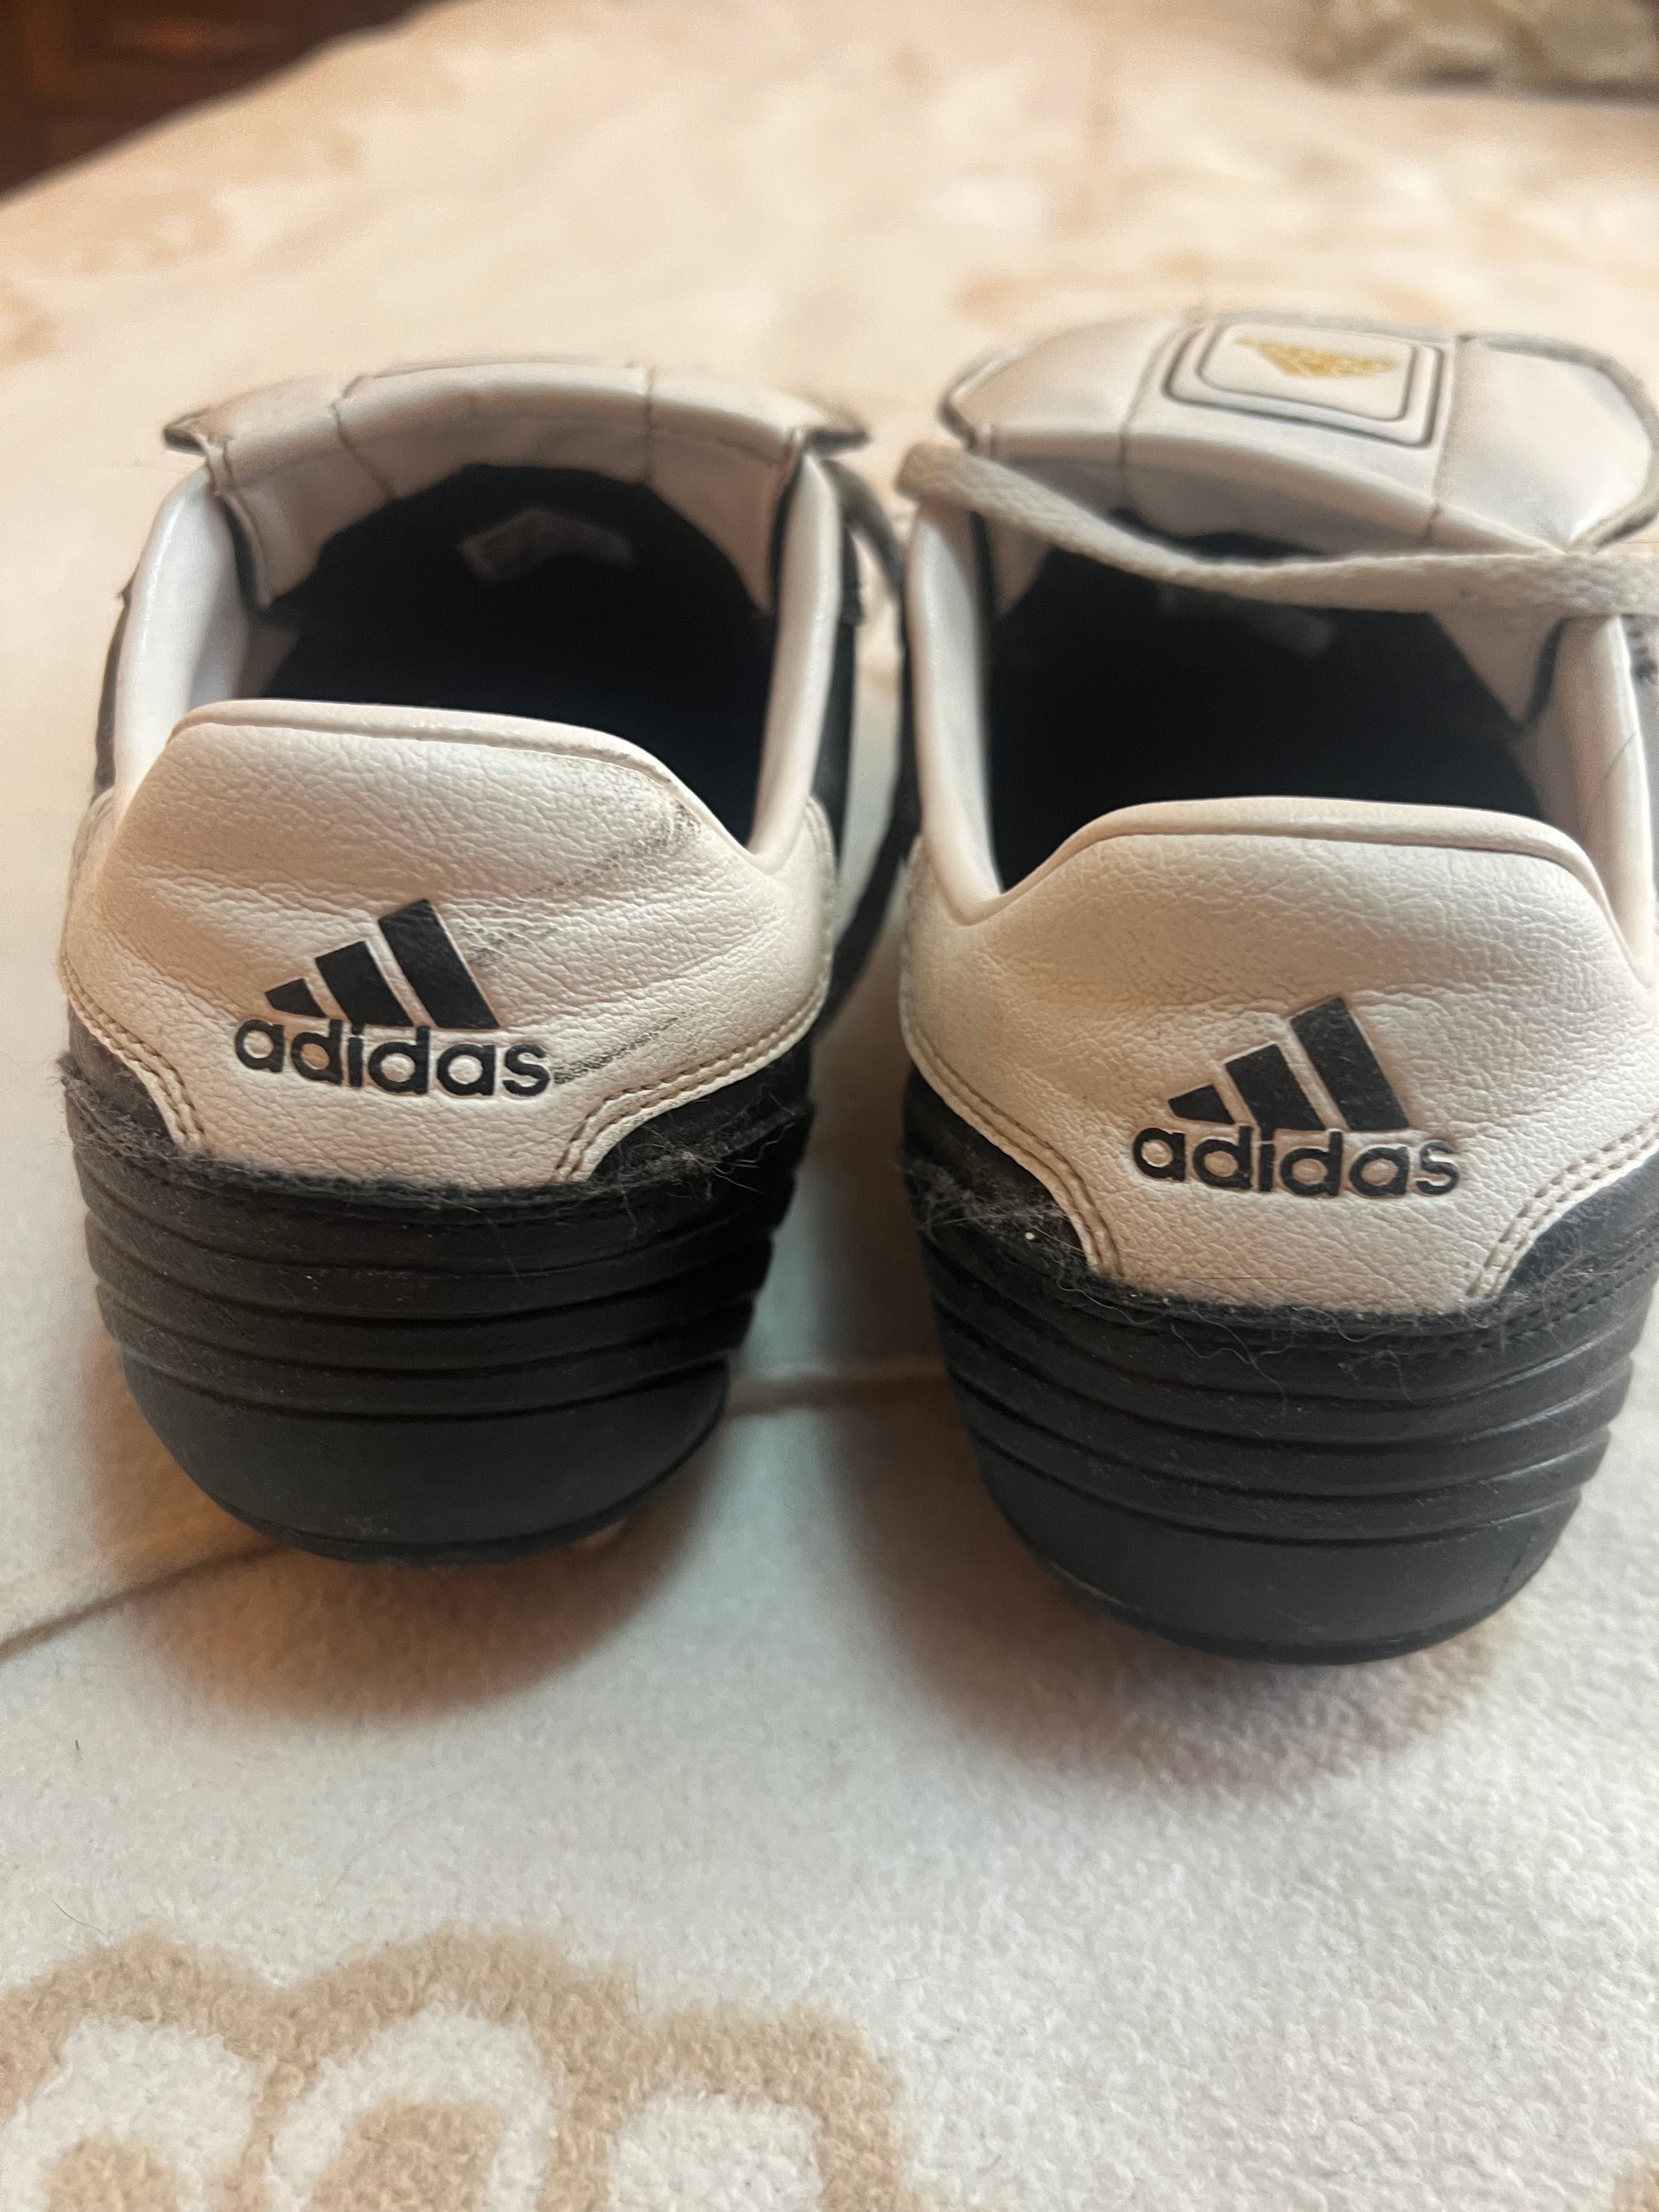 Adidas   Telstar